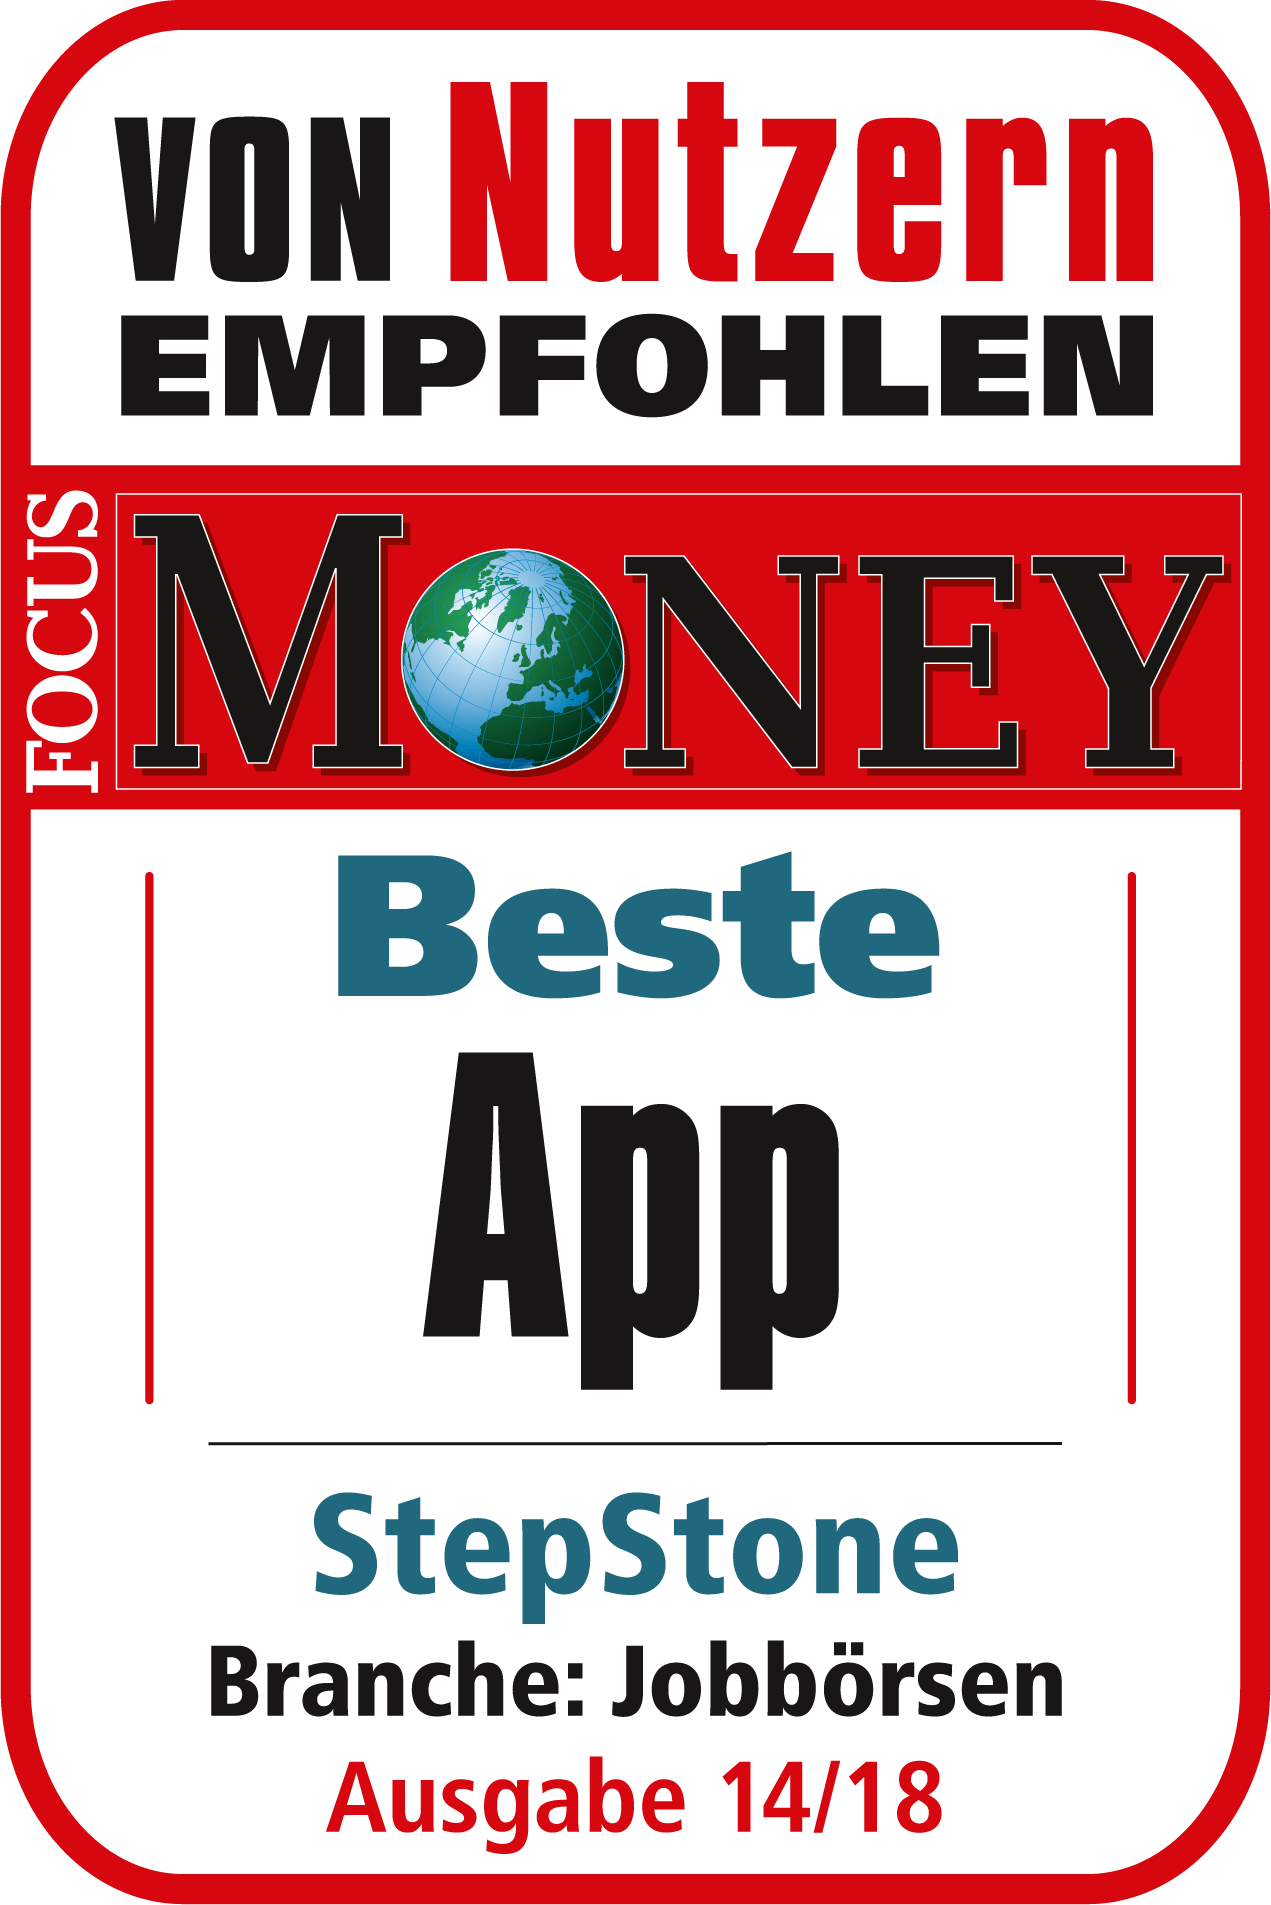 Stepstone ist für die beste App in der Branche Jobbörsen von Focus Money ausgezeichnet worden (Ausgabe 14/18)